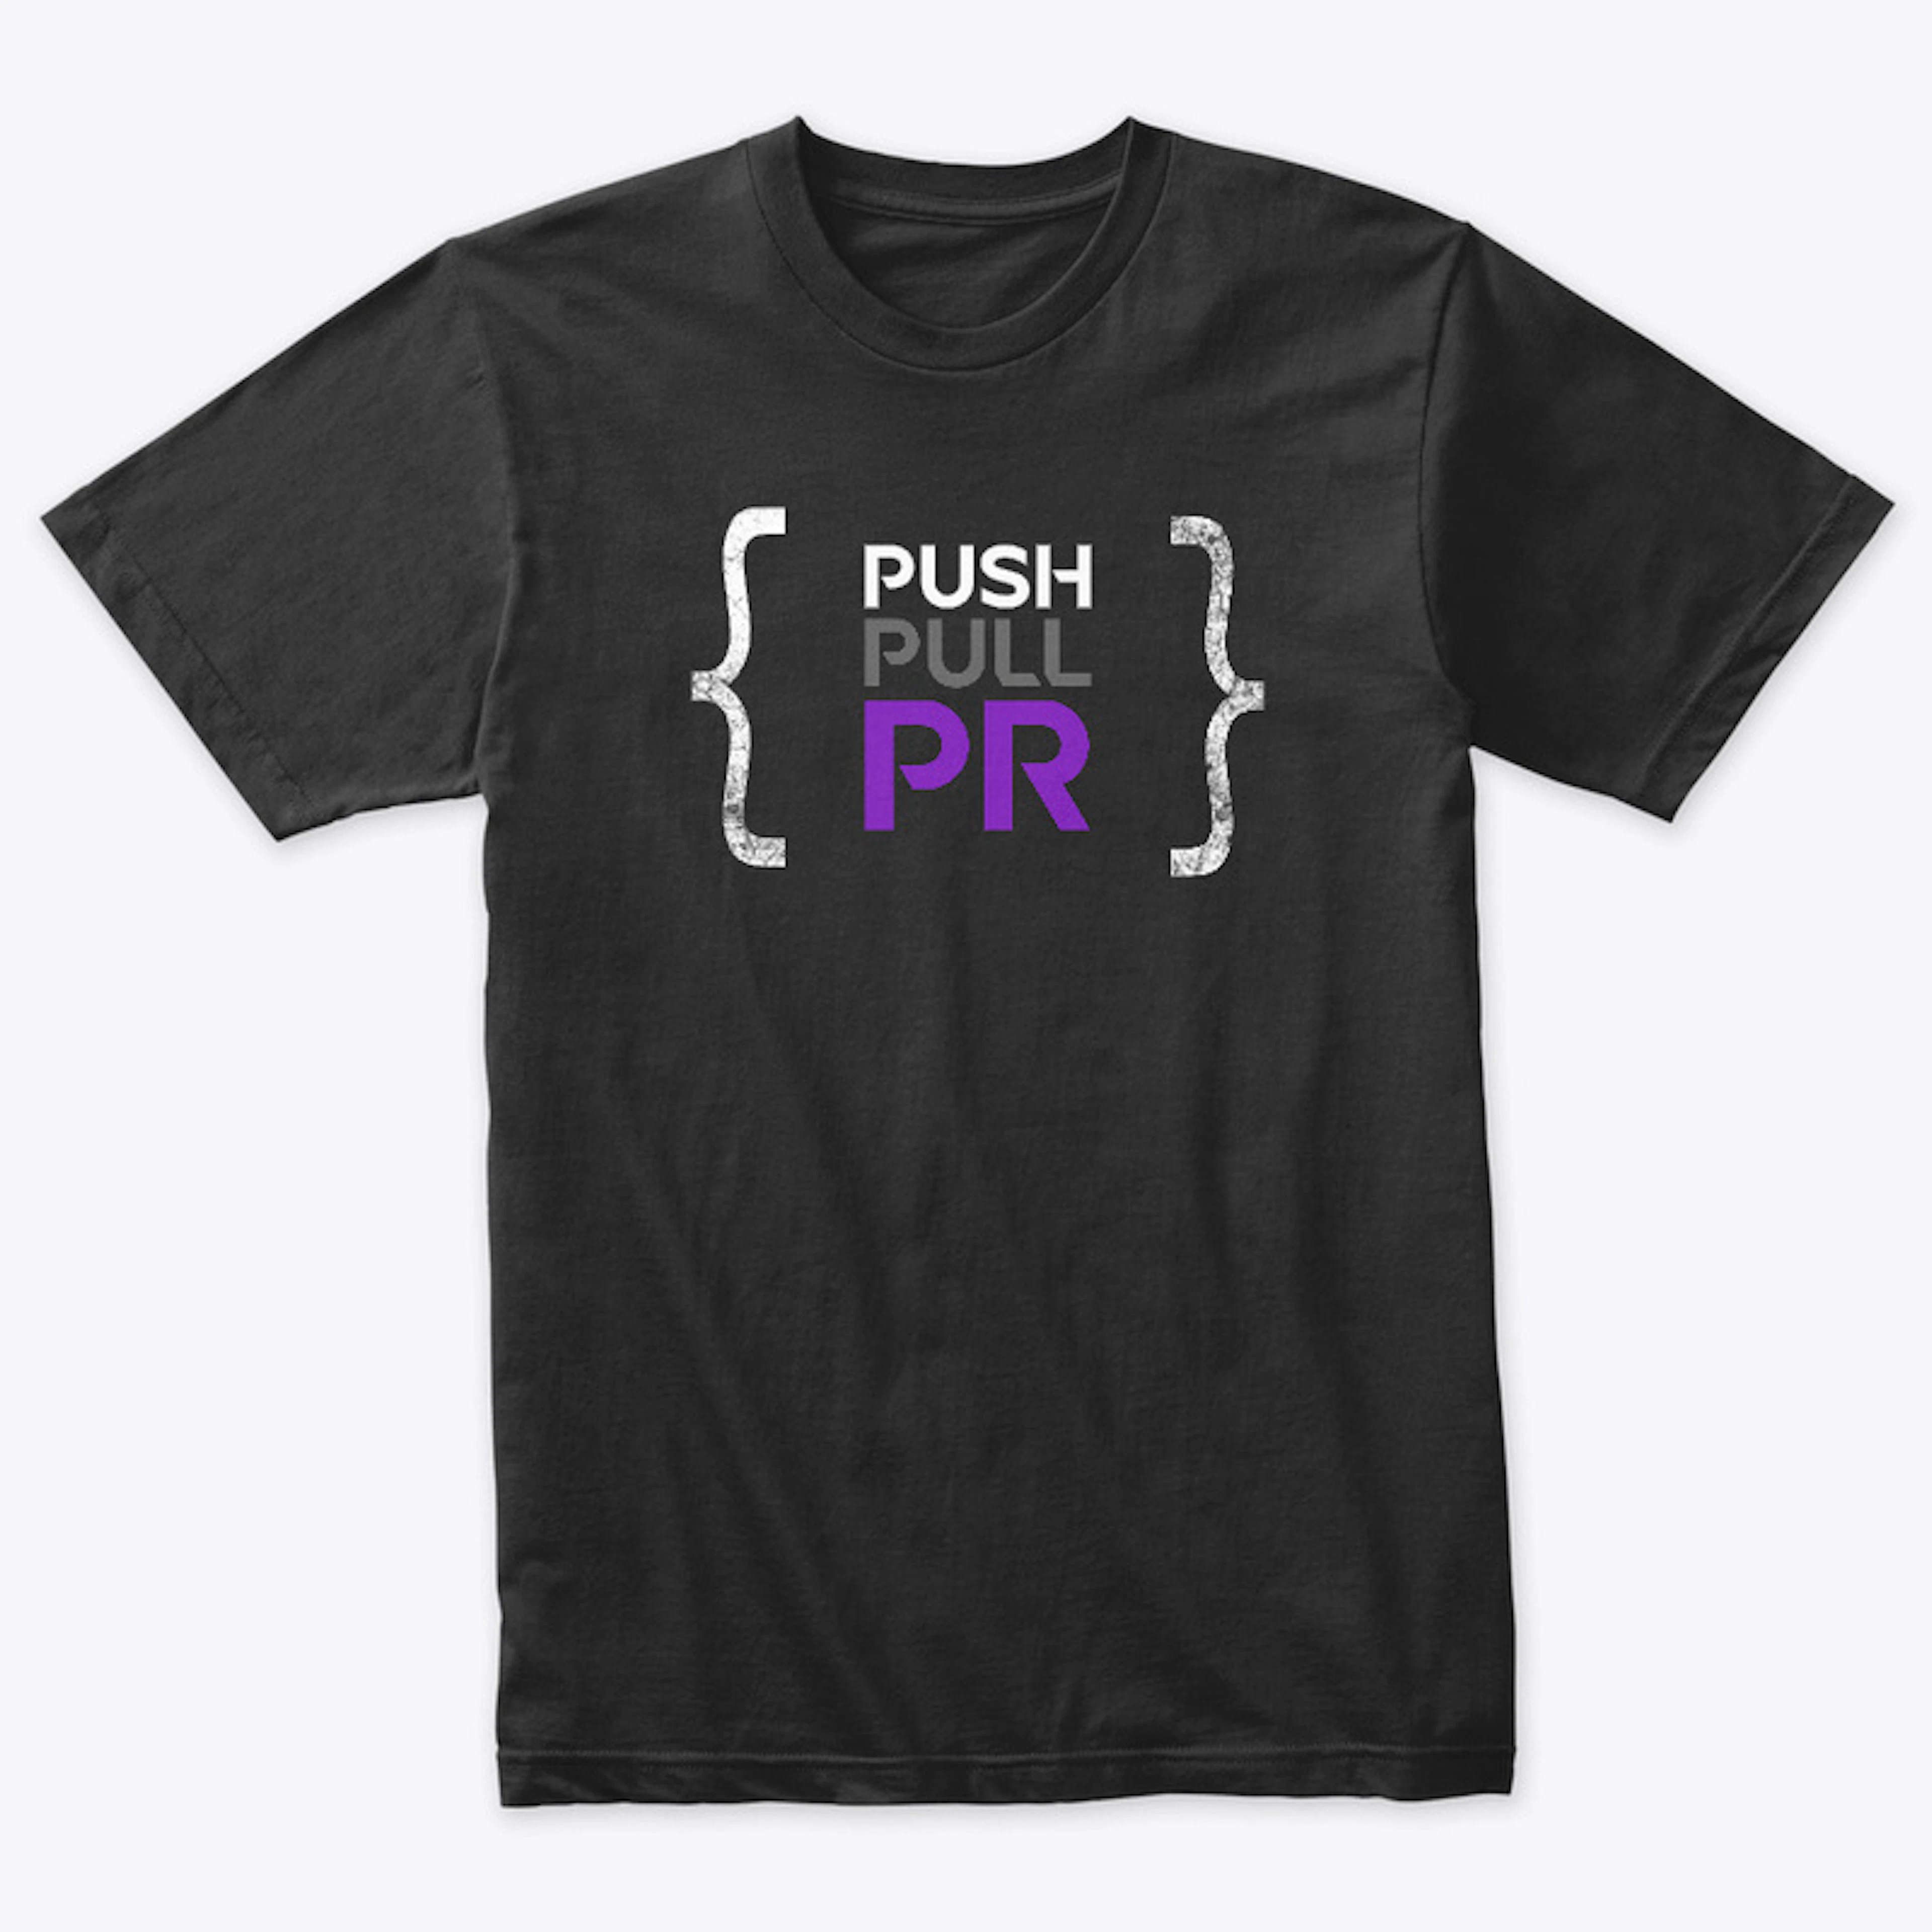 Push Pull PR